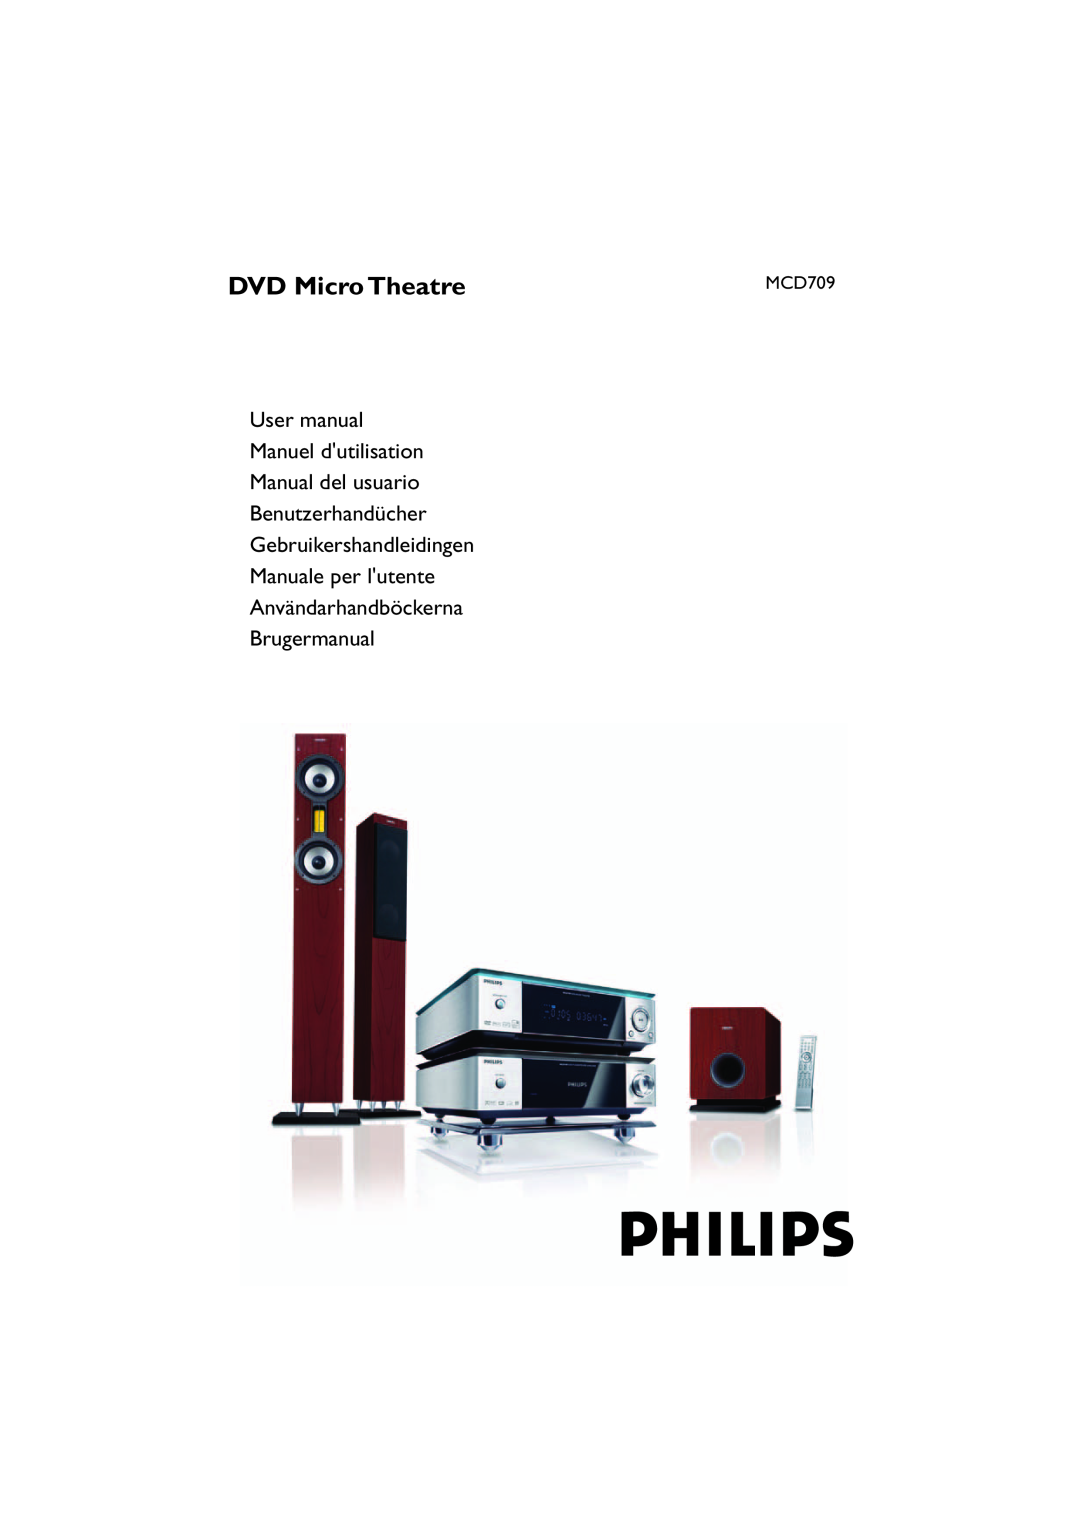 Philips MCD709 user manual DVD Micro Theatre, Manual del usuario Benutzerhandücher, Användarhandböckerna Brugermanual 